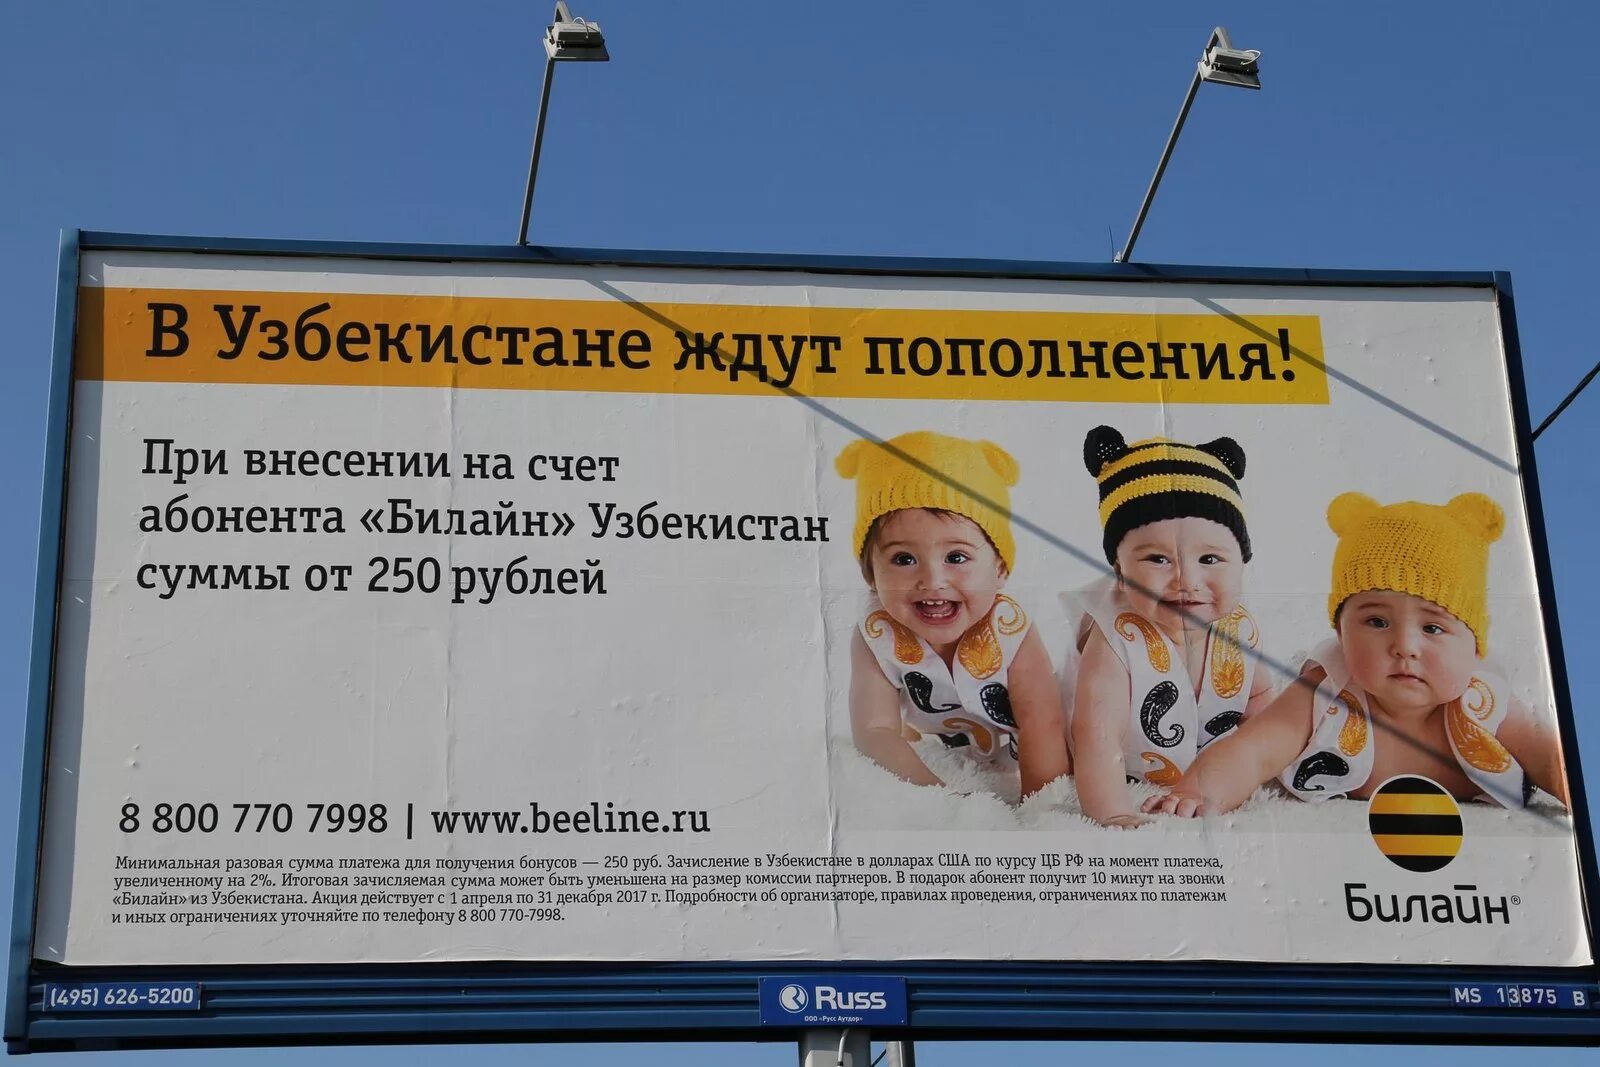 Использование детей в рекламе. Реклама для детей примеры. Запрещенная реклама для детей. Образ ребенка в рекламе. Дискредитация использования